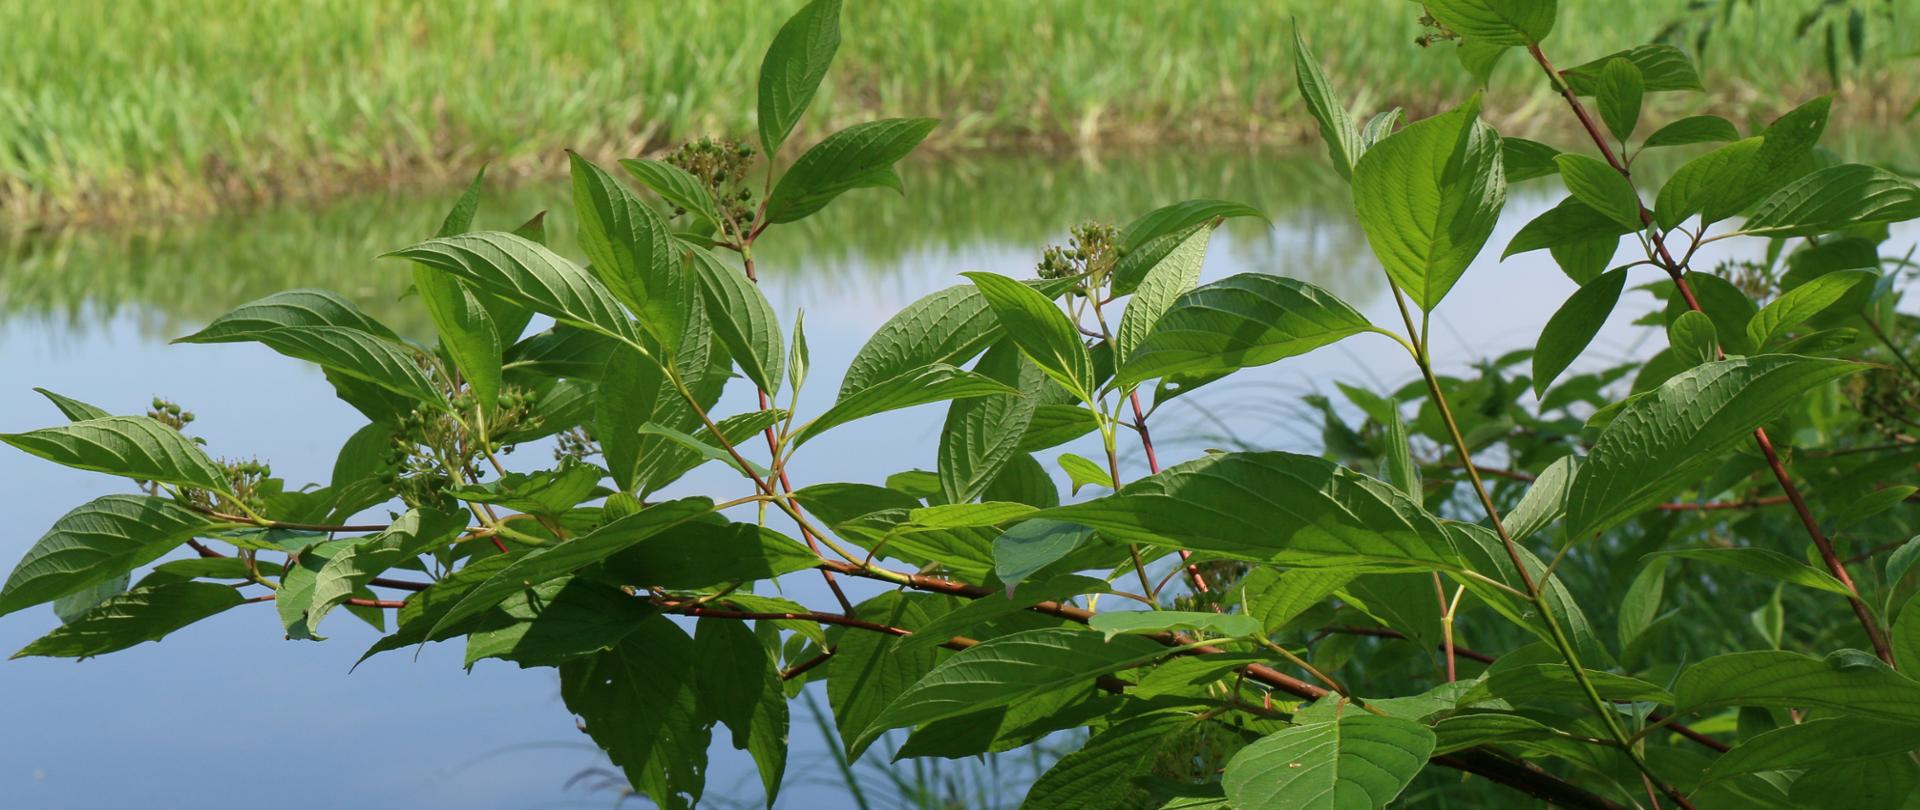 Na tle rzeki pokazana gałąź wraz zielonymi liśćmi oraz gronami owoców derenia rozłogowego.